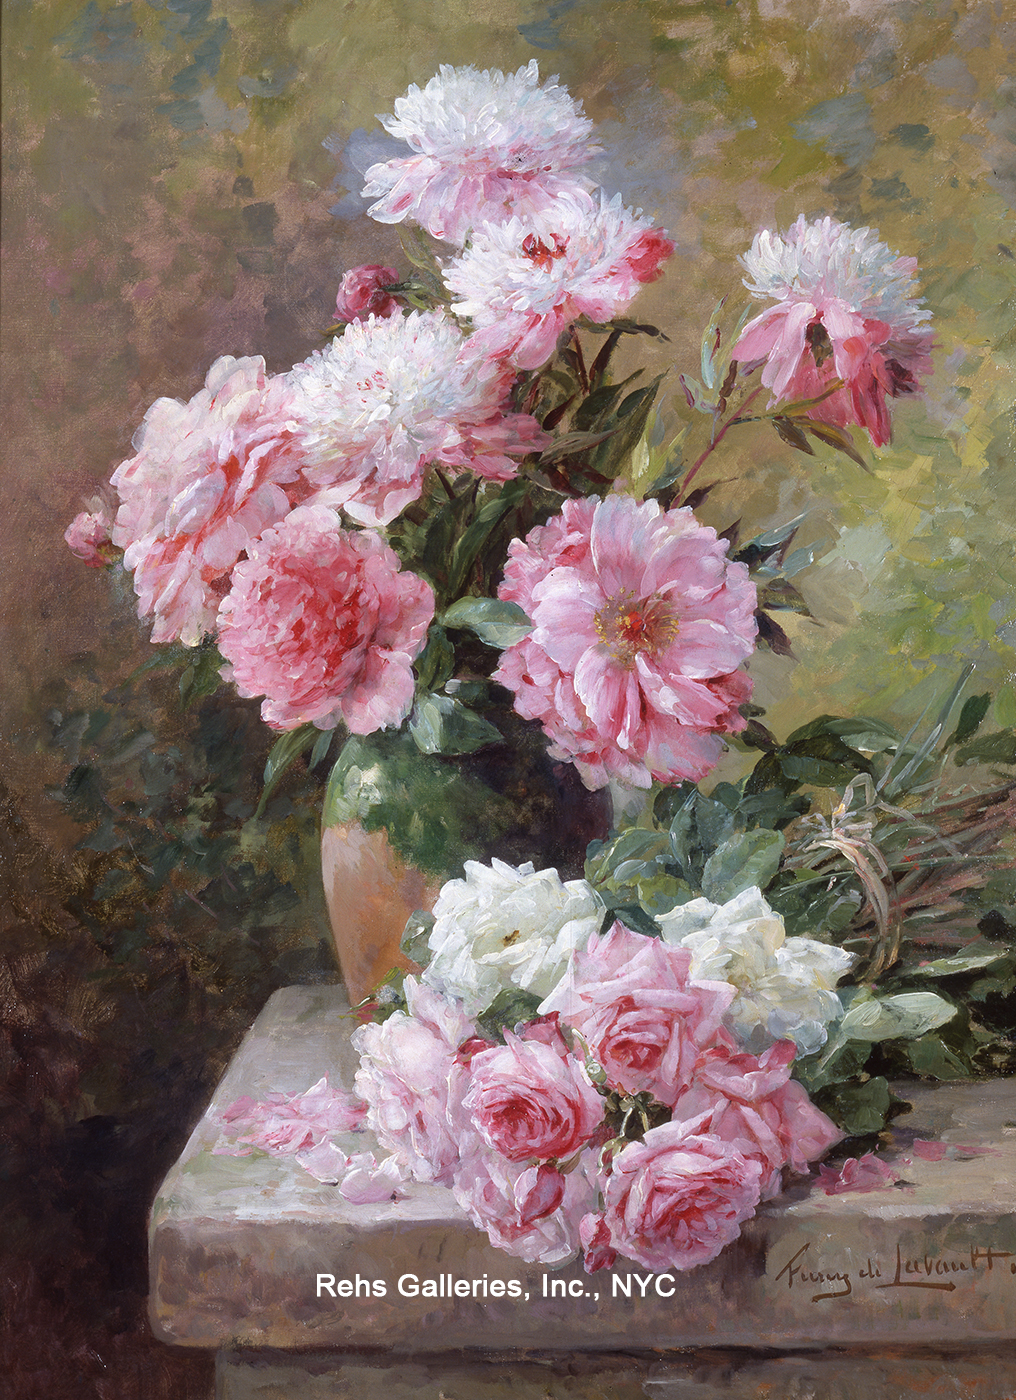 Roses & Peonies - Furcy De Lavault Albert Tibule